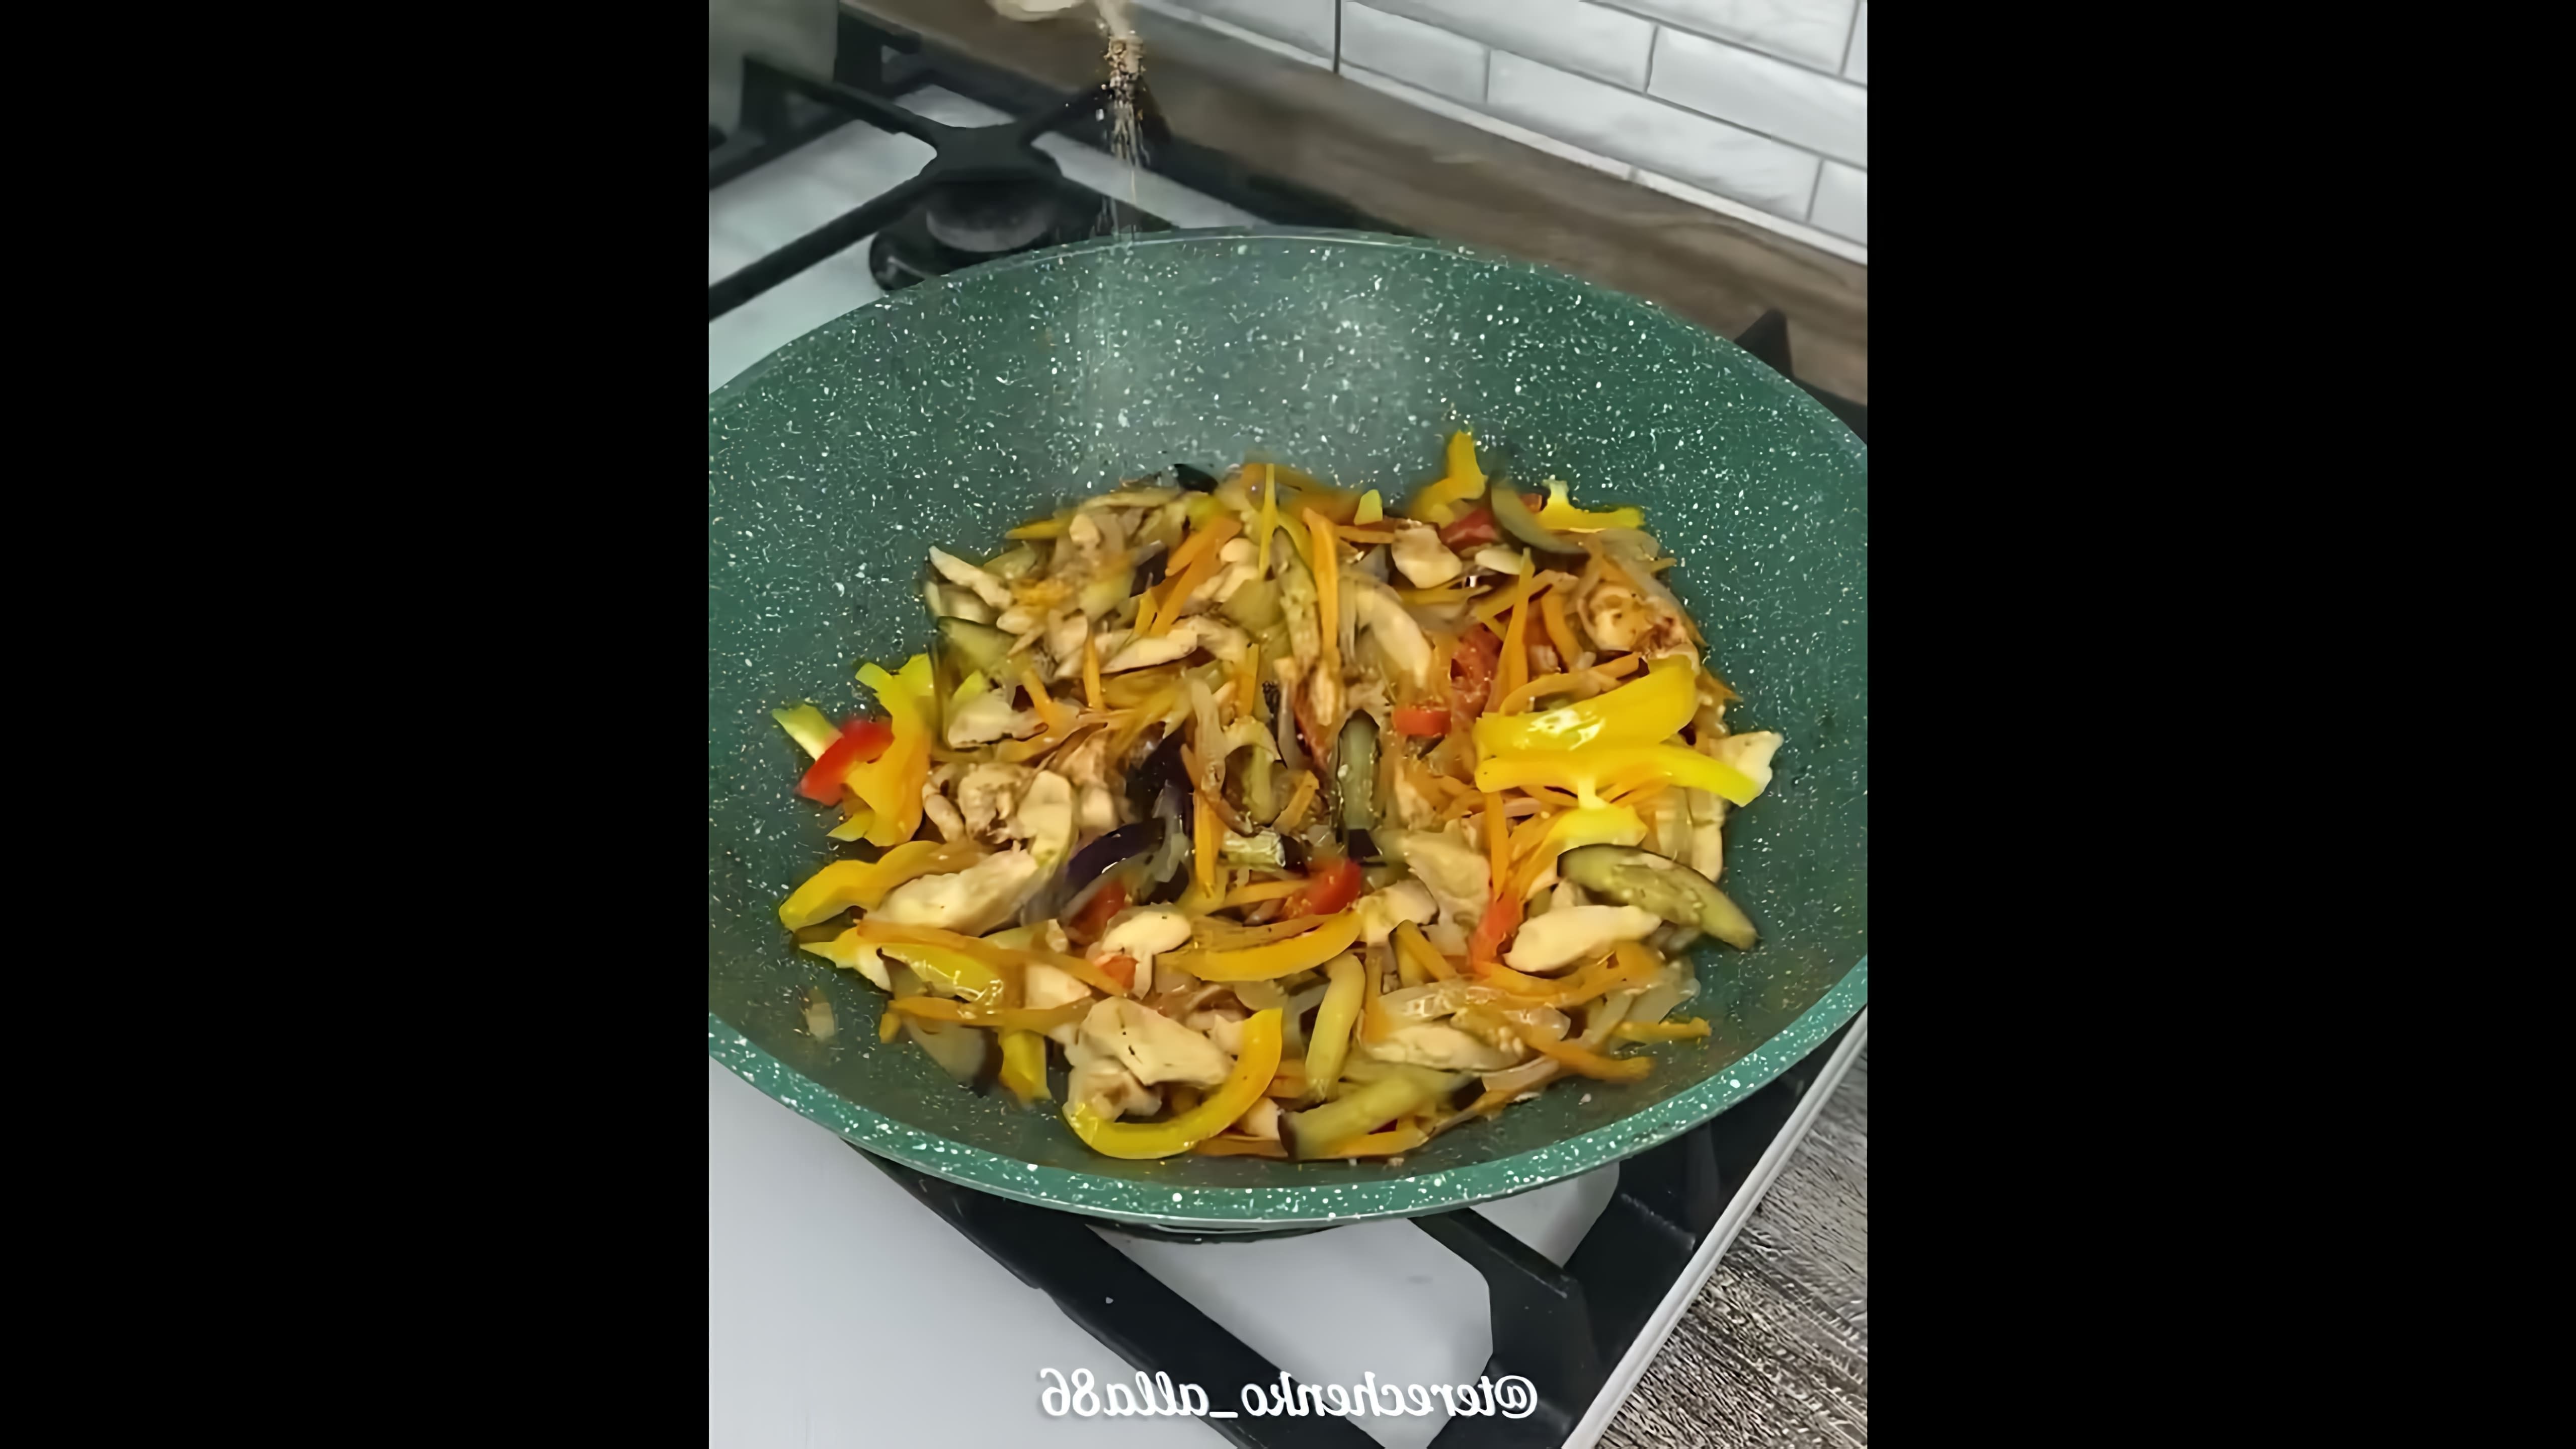 В этом видео демонстрируется процесс приготовления фунчозы с куриным филе и овощами